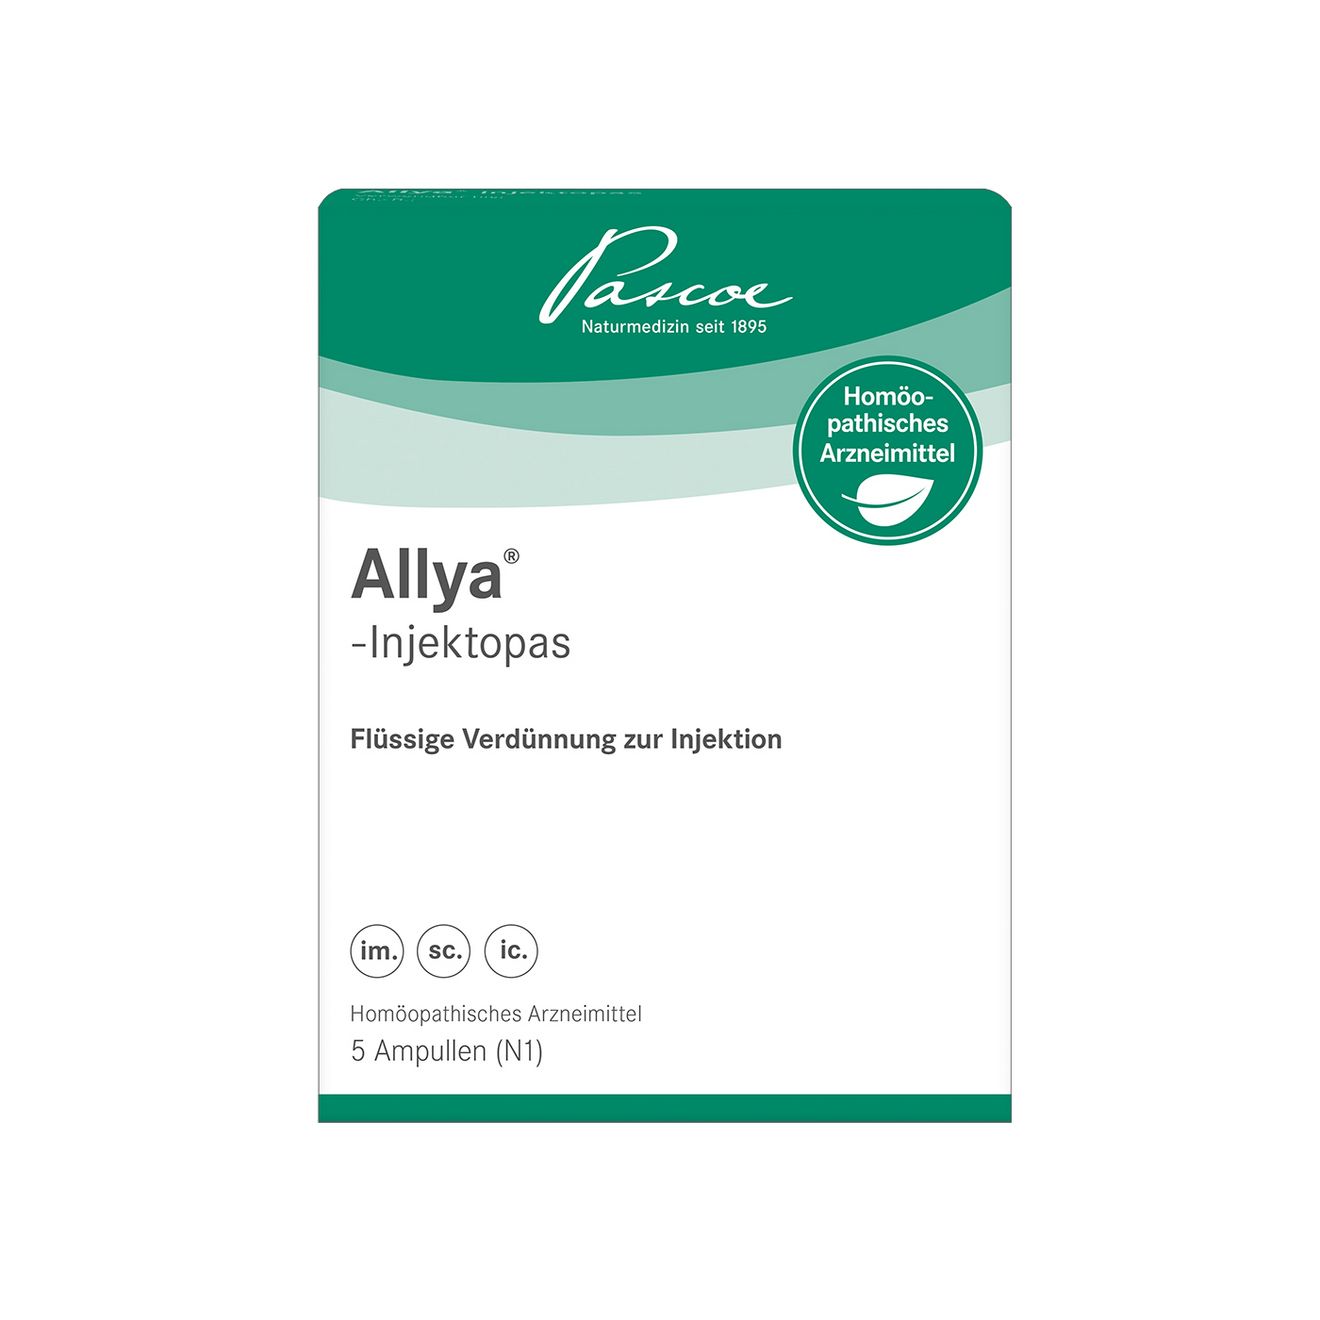 Allya-InjektopasAllya-Injektopas